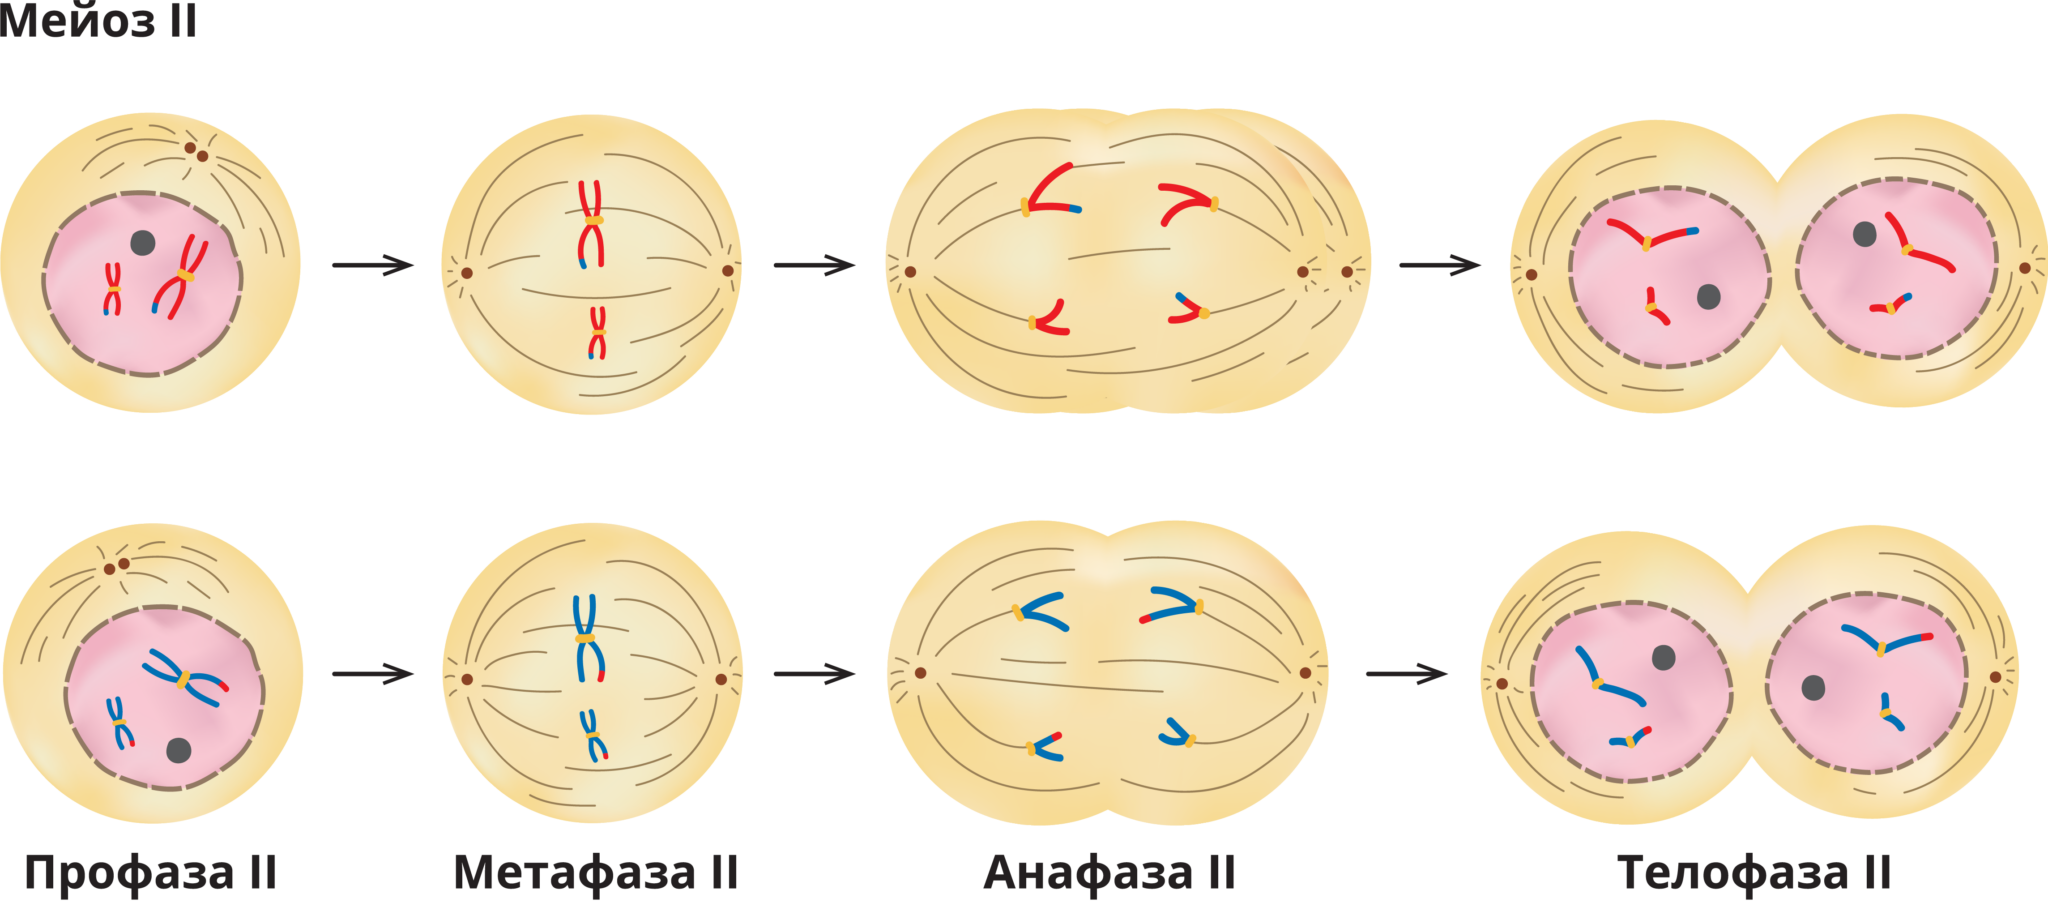 Фаза деления - профаза 1. Стадии профазы 1 деления мейоза. Первое деление мейоза набор хромосом. Интерфаза мейоза 2. Мейоз в зародышевых клетках